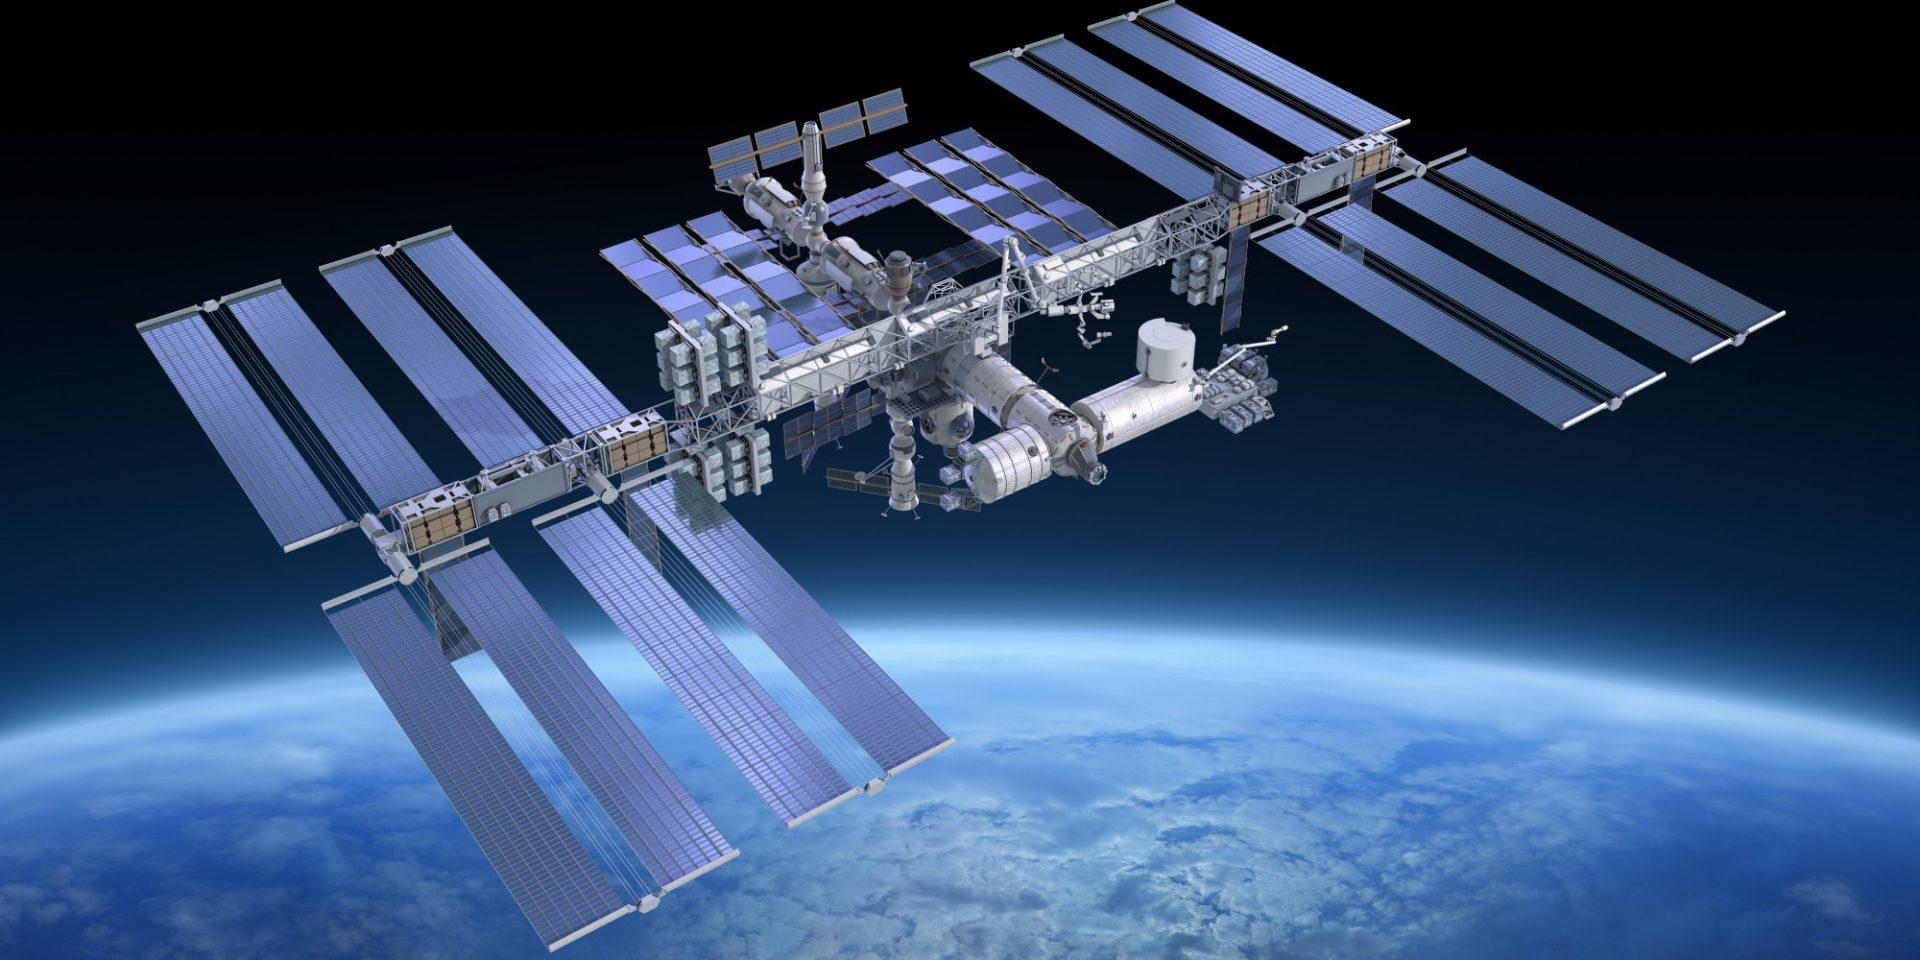 Quer ir para o espaço? NASA vai permitir visitas na ISS em breve